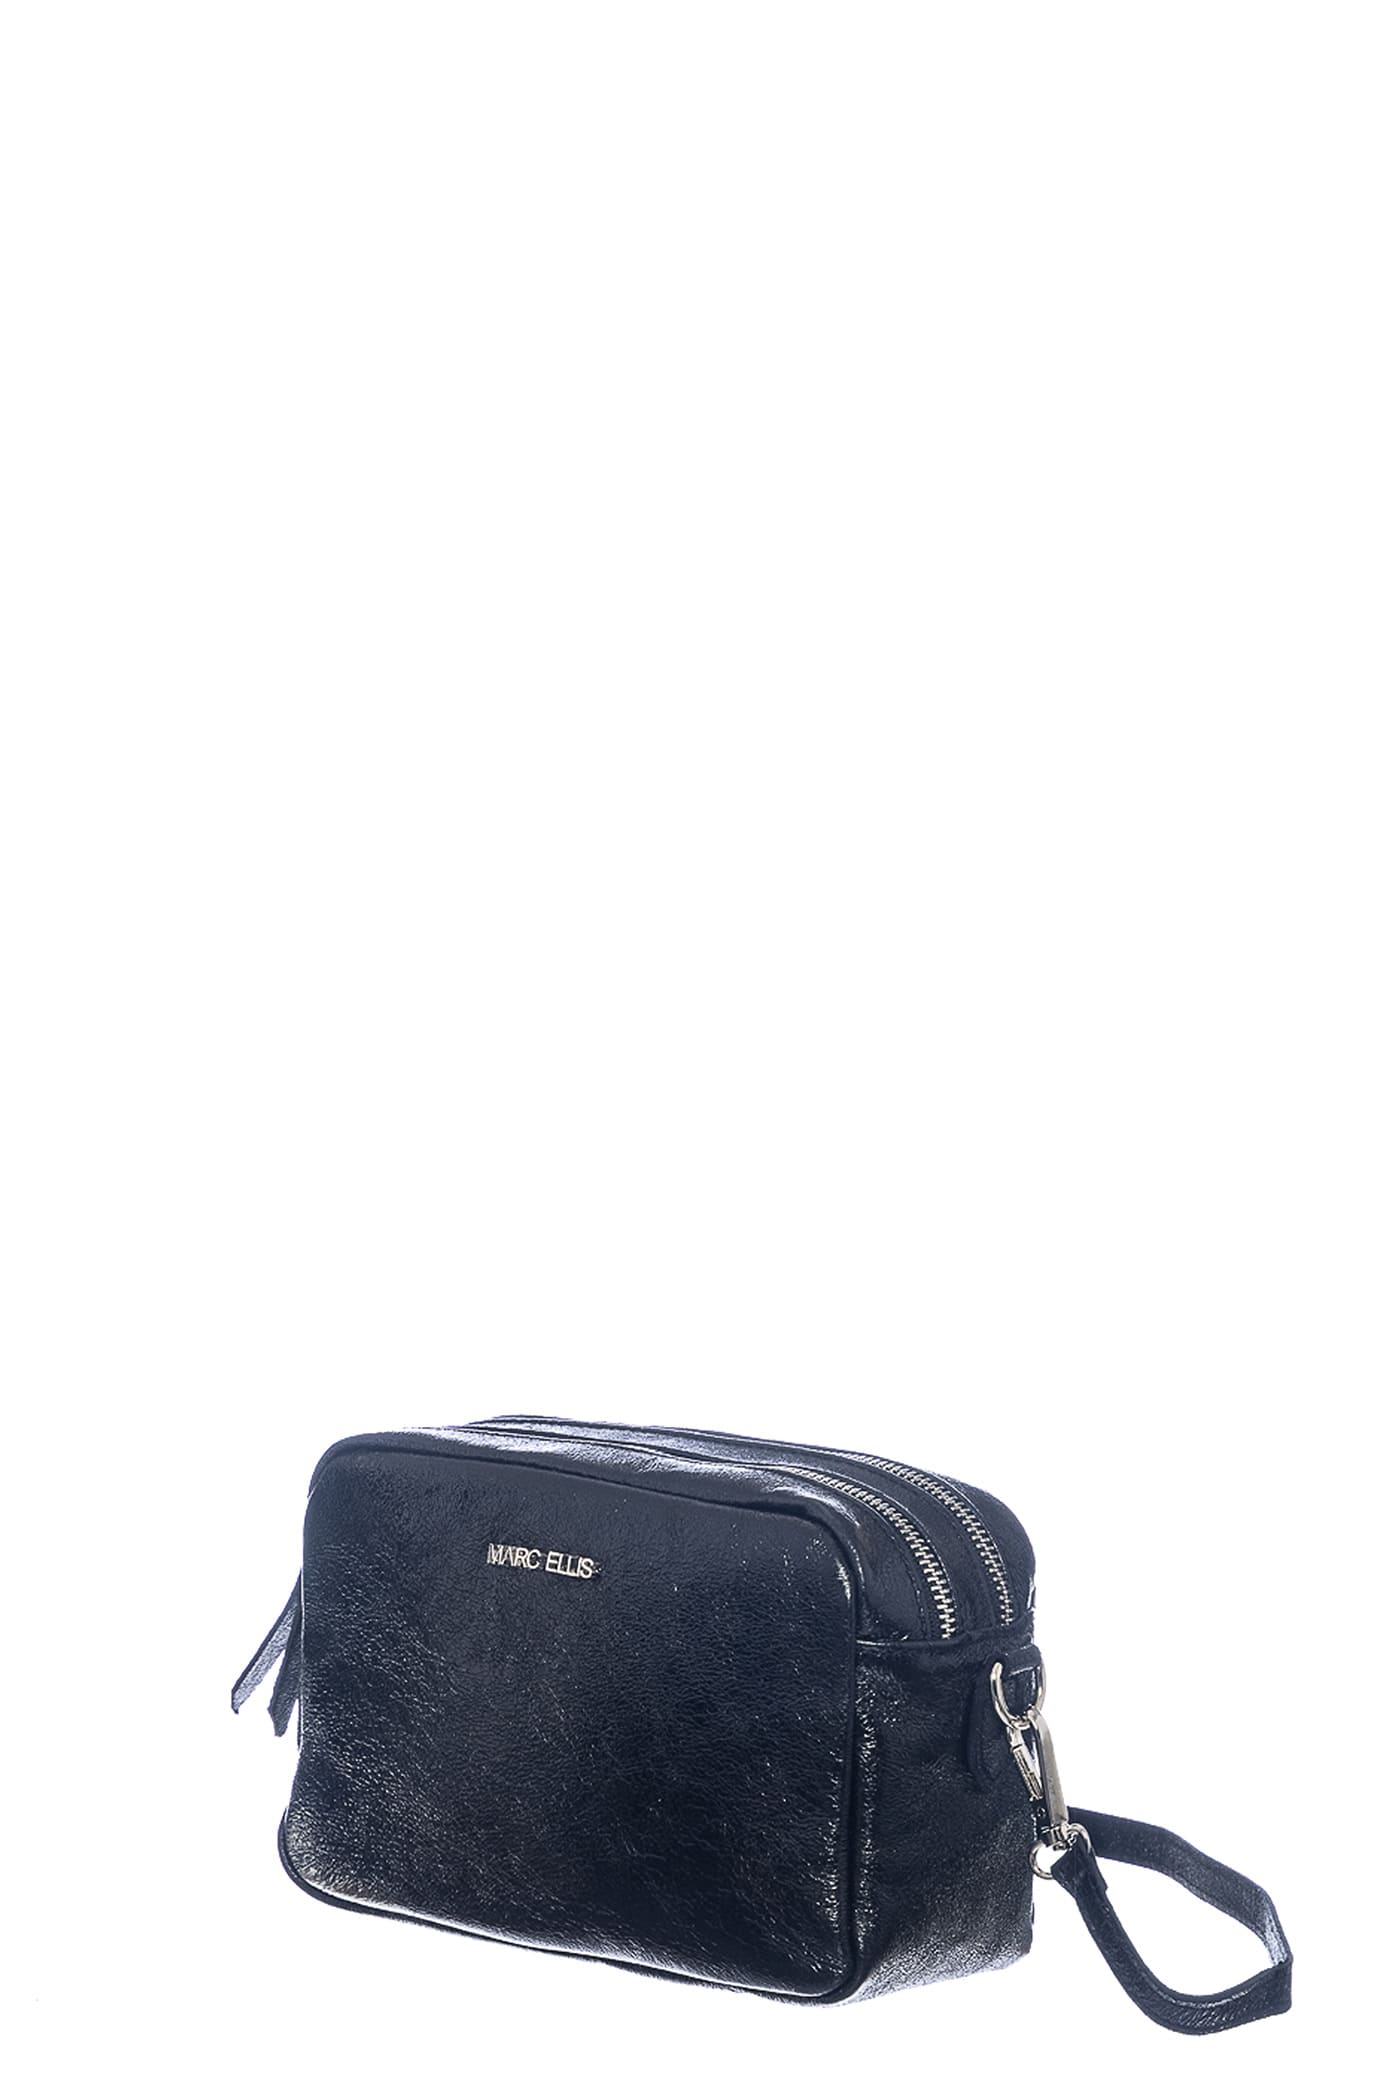 Marc Ellis Allyson Piper Shoulder Bag In Black Leather